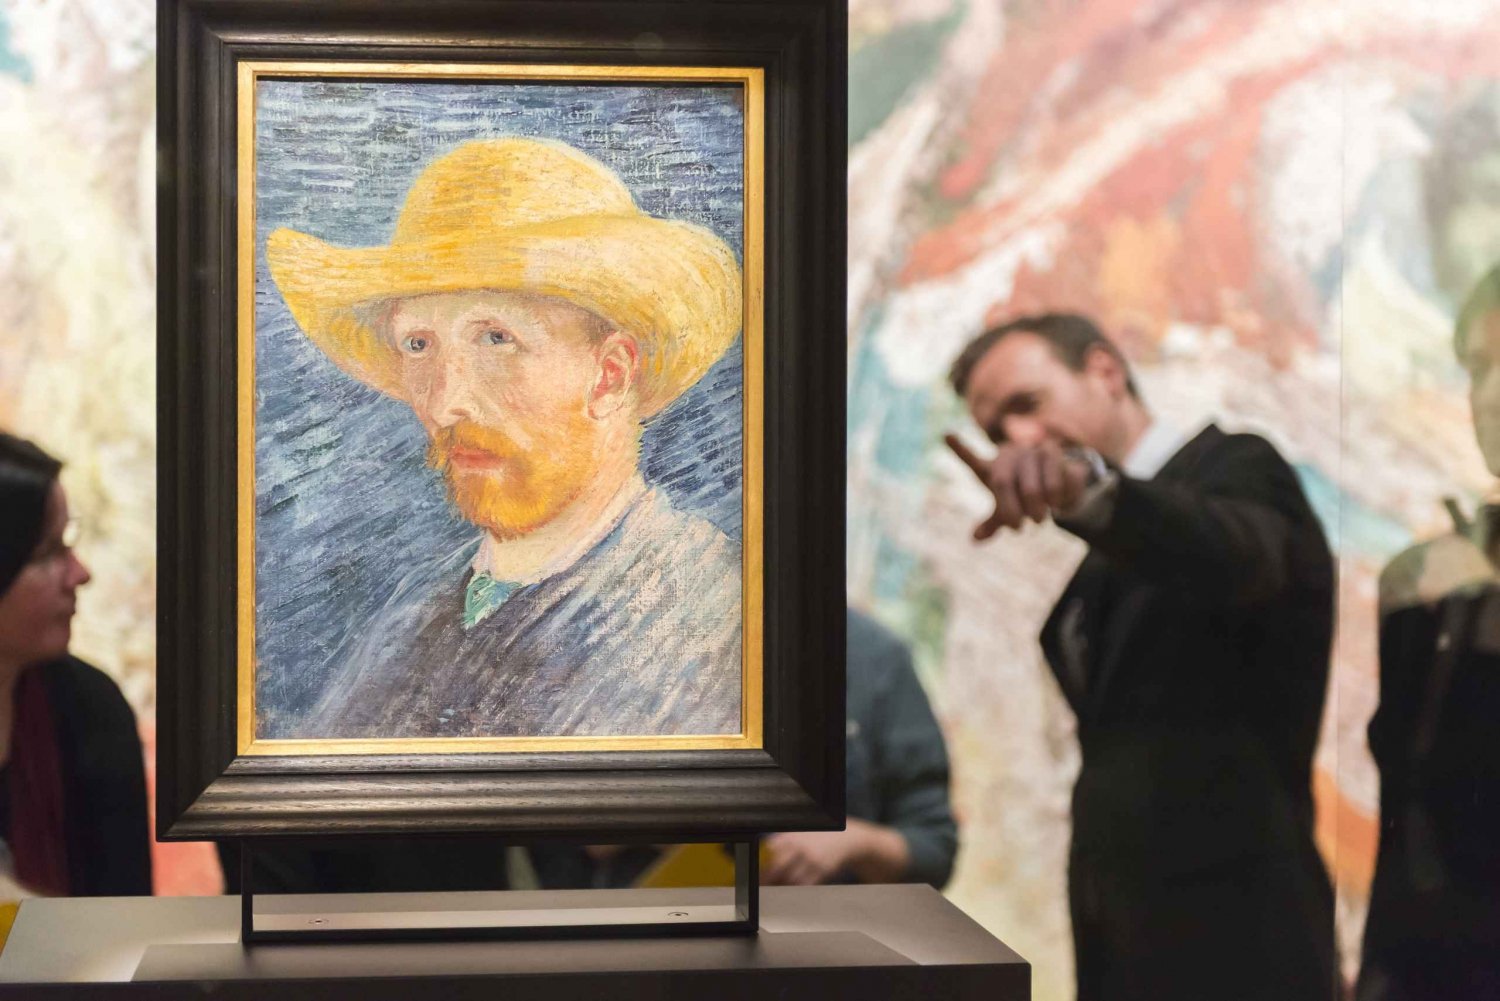 Footsteps of Van Gogh Tour and Van Gogh Museum